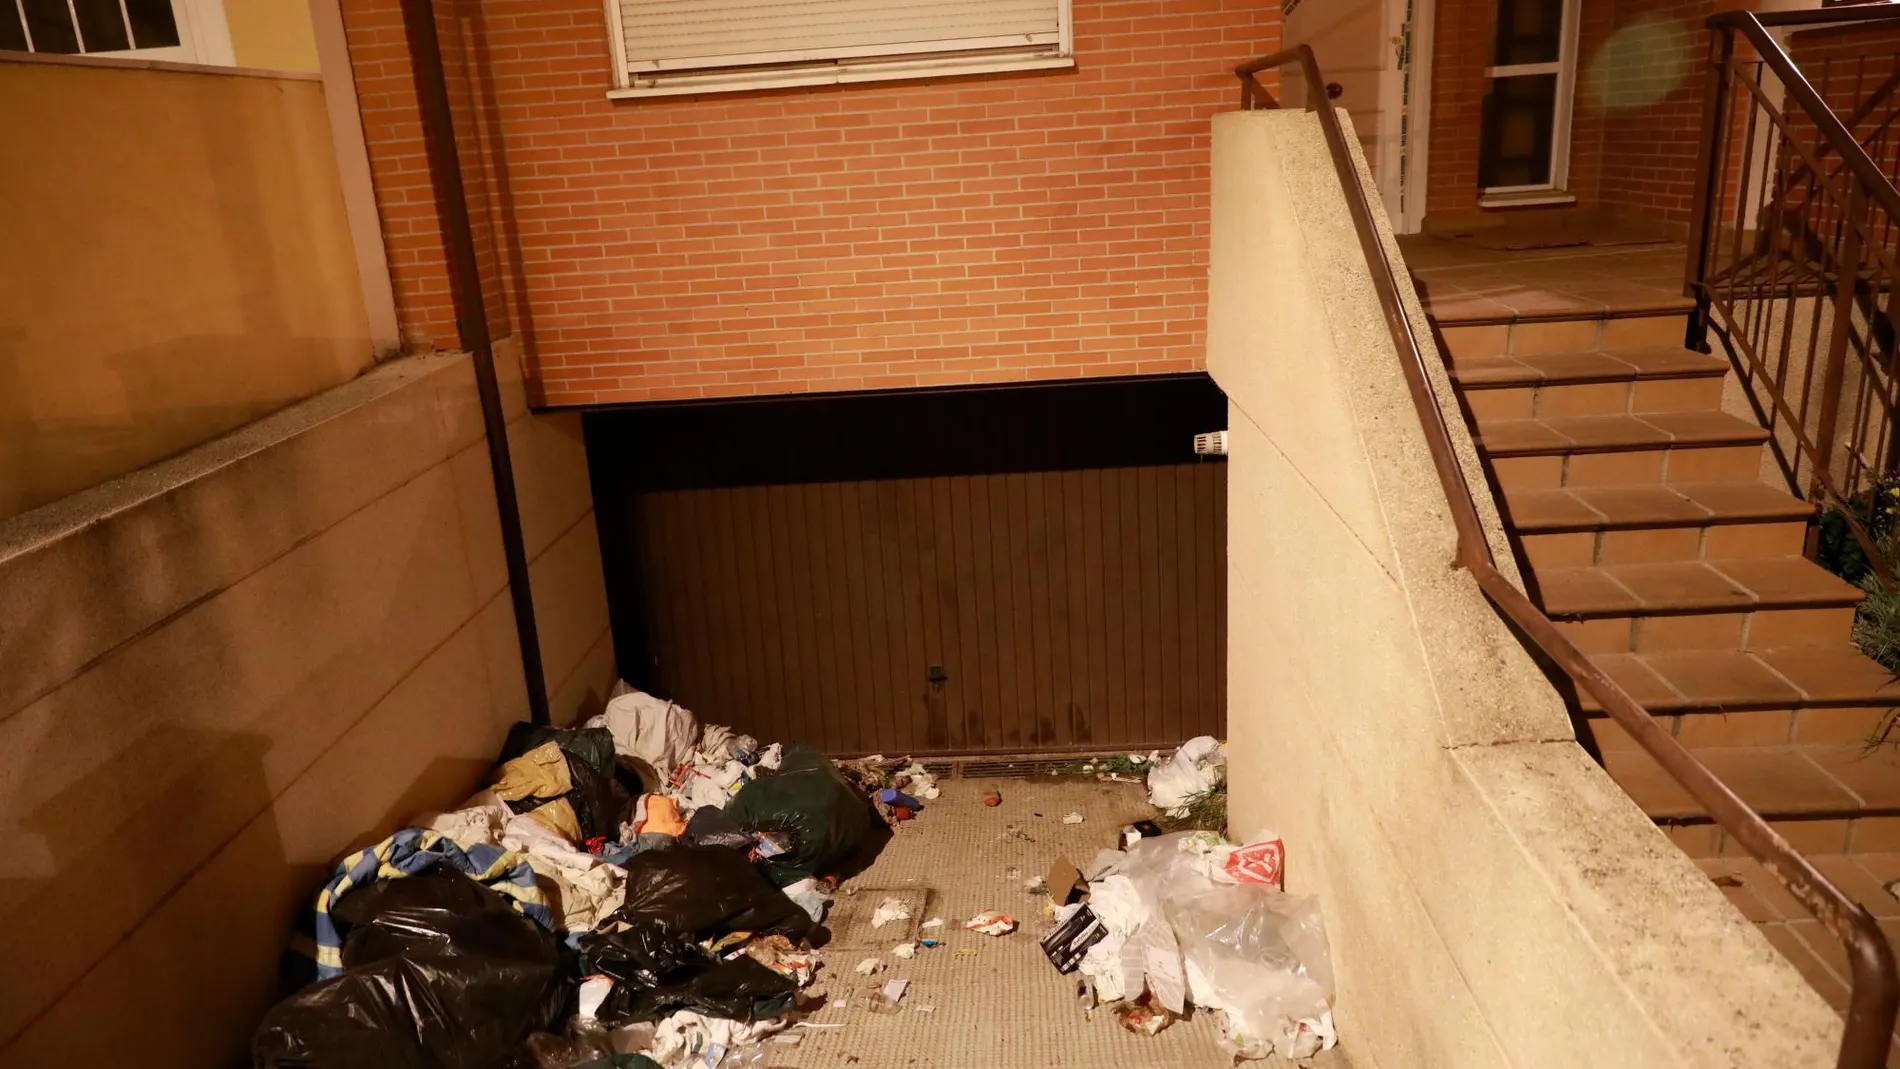 Casa en la calle Francia 124 de Valdemoro donde Leandro V. J. vivía de okupa. La Guardia Civil encontró restos del cadáver de la joven entre la basura